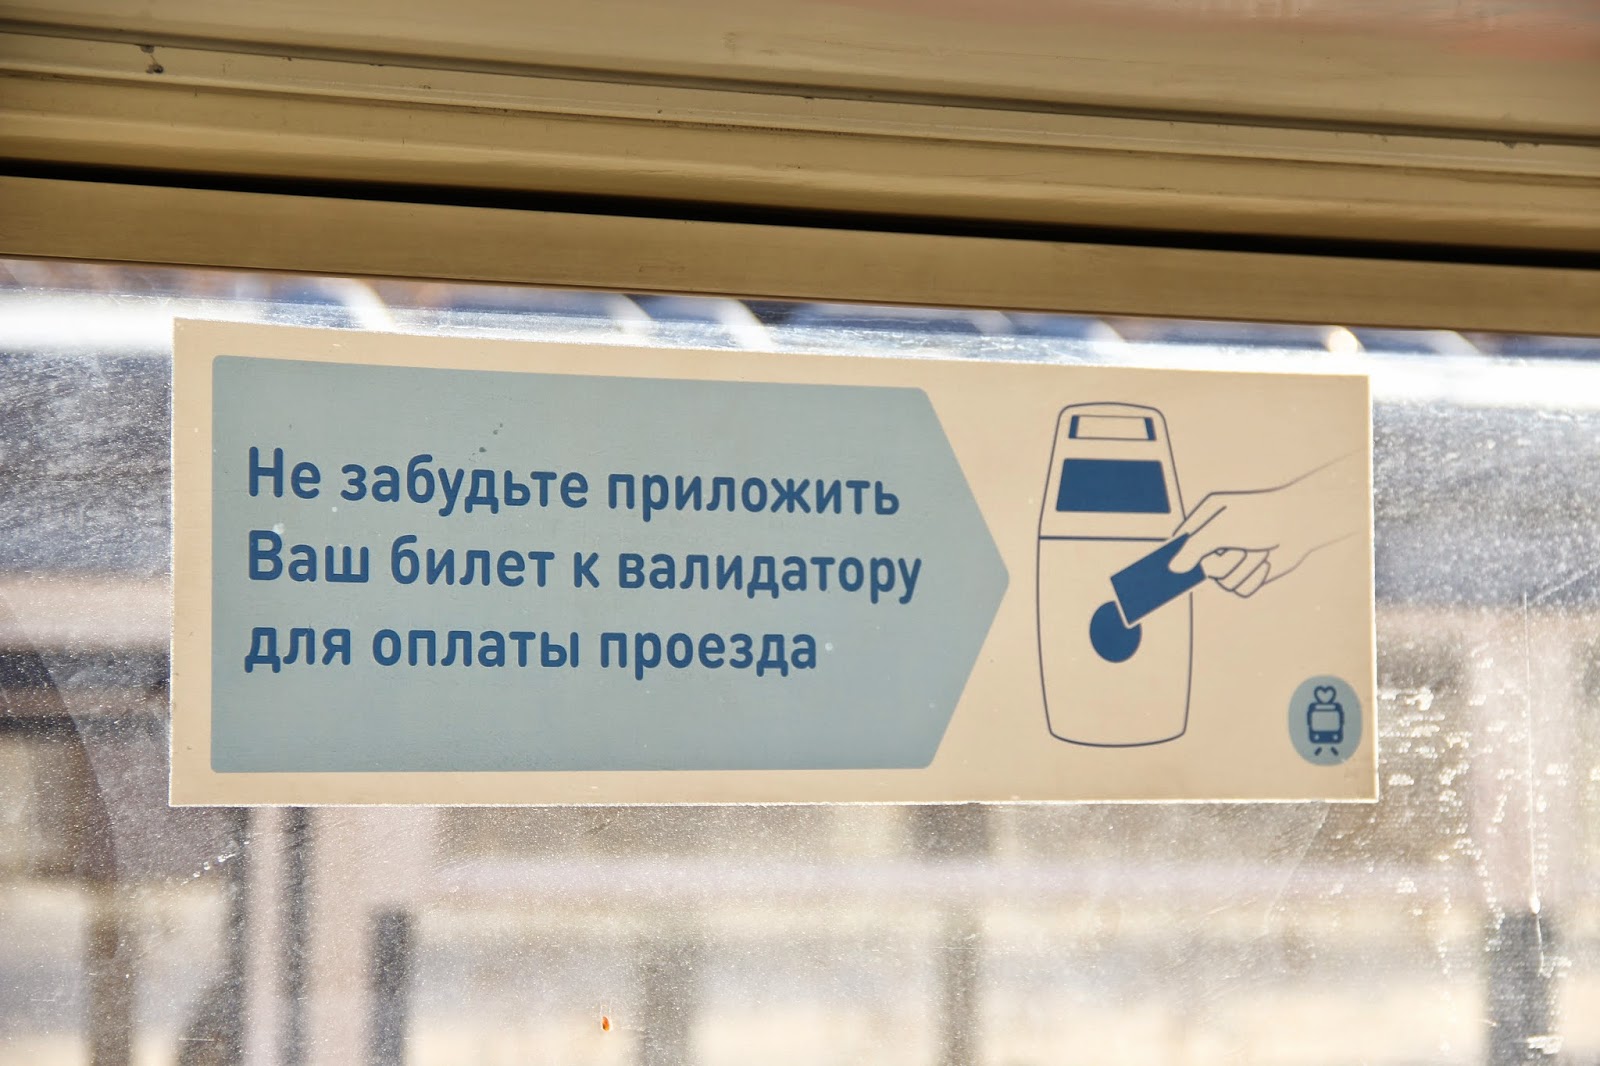 Получить подарок у контролера викторины. Пожалуйста приложите проездной к валидатору. Пожалуйста приложите ваш чип к валидатору. Расписание работы контролеров в автобусах в Москве.